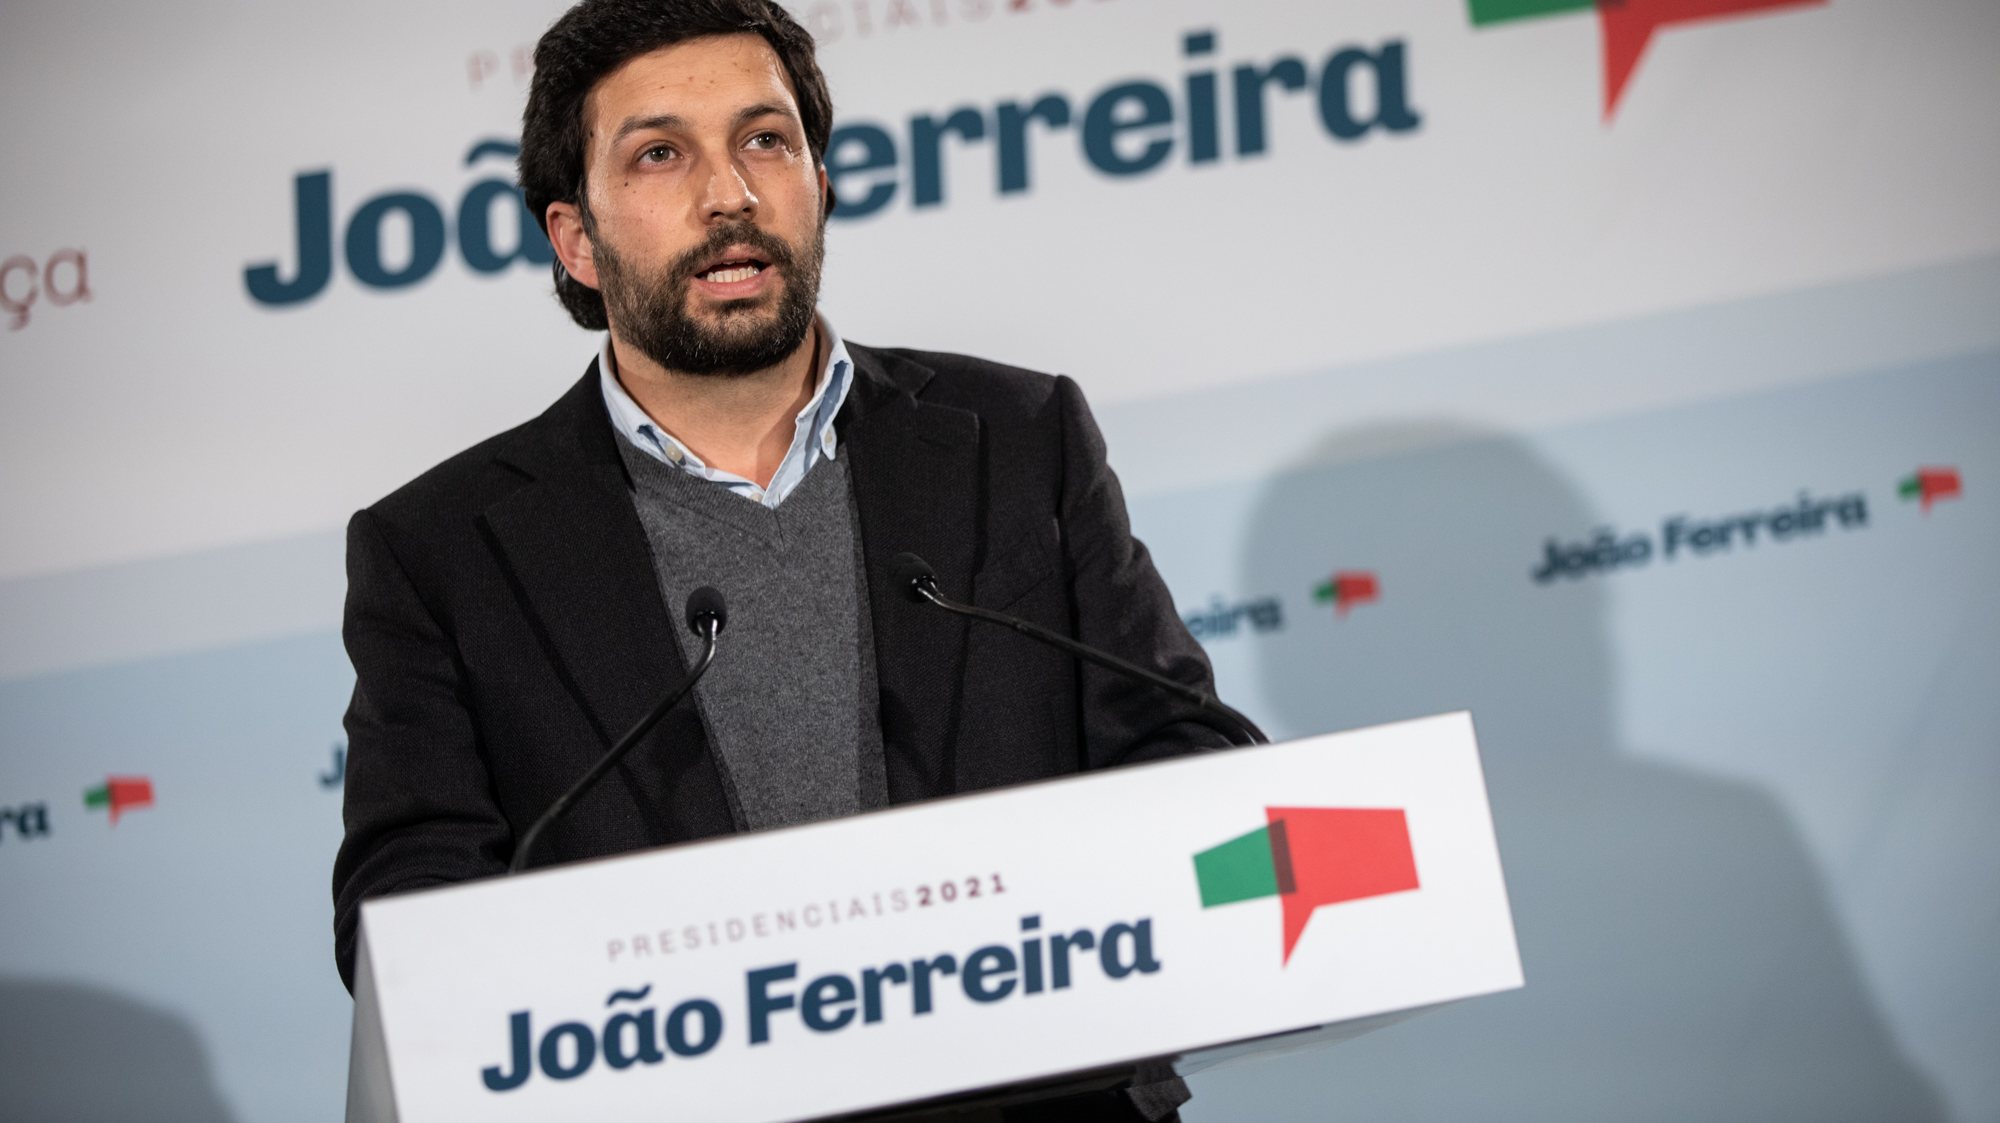 João Ferreira no discurso após a divulgação dos resultados das eleições